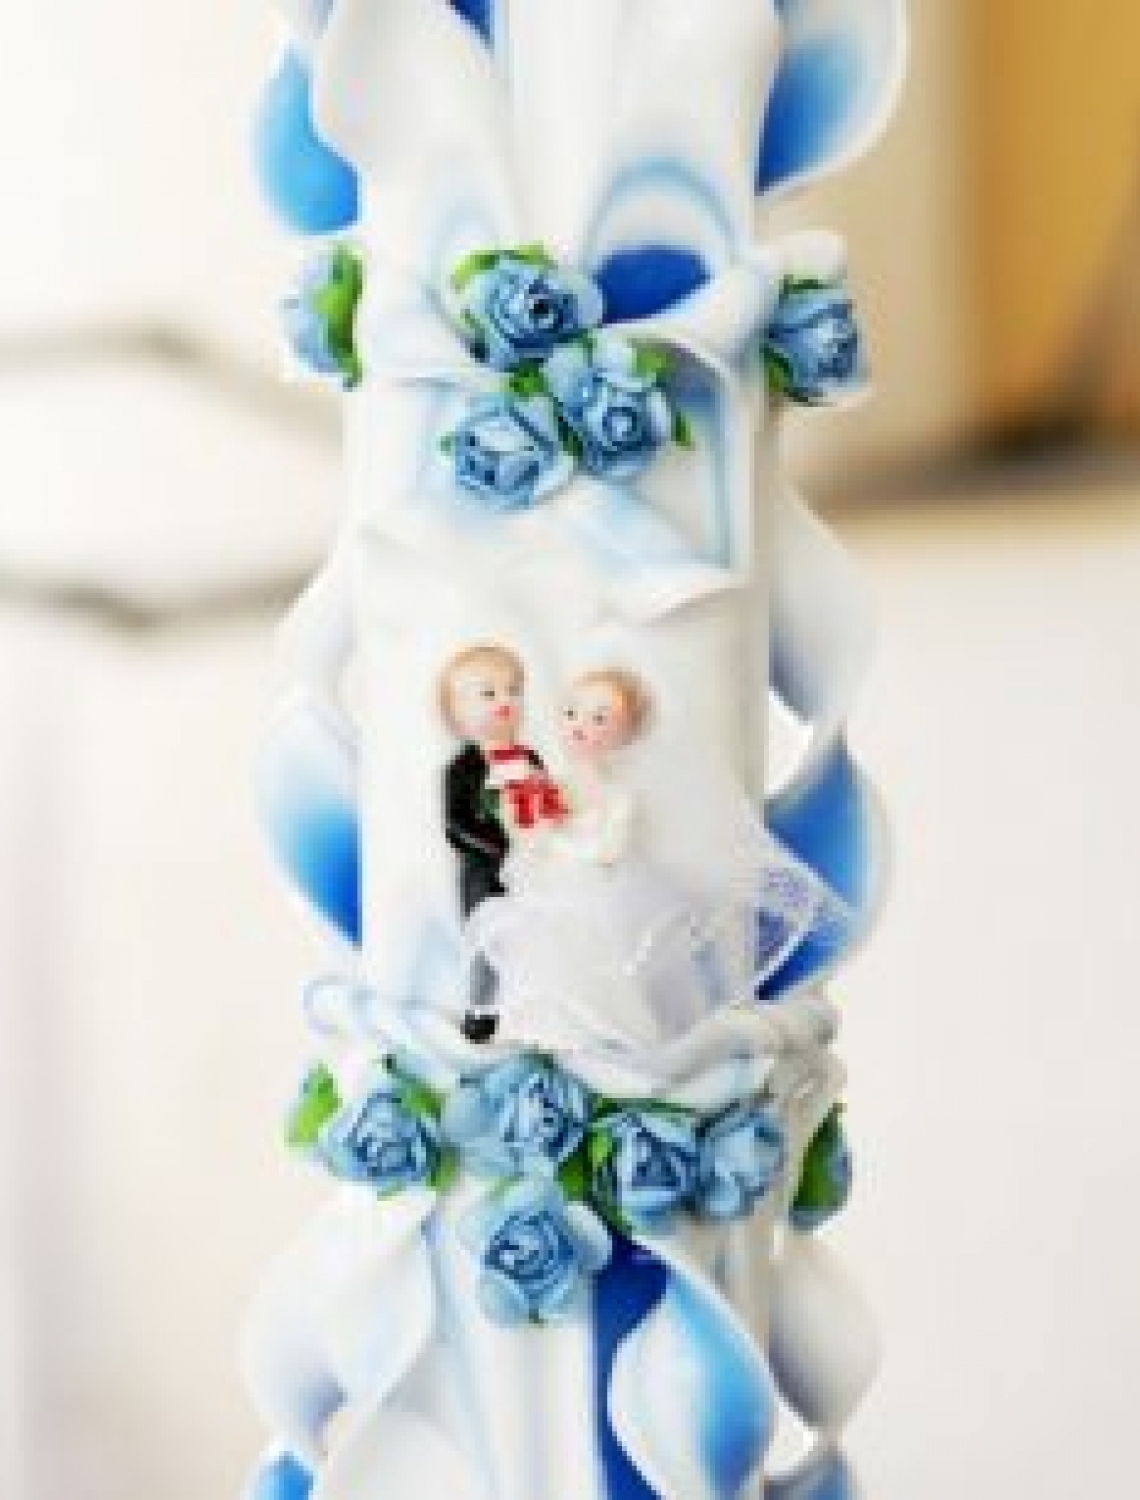 Lumanare nunta albastra 120 cm sculptata la ambele capete